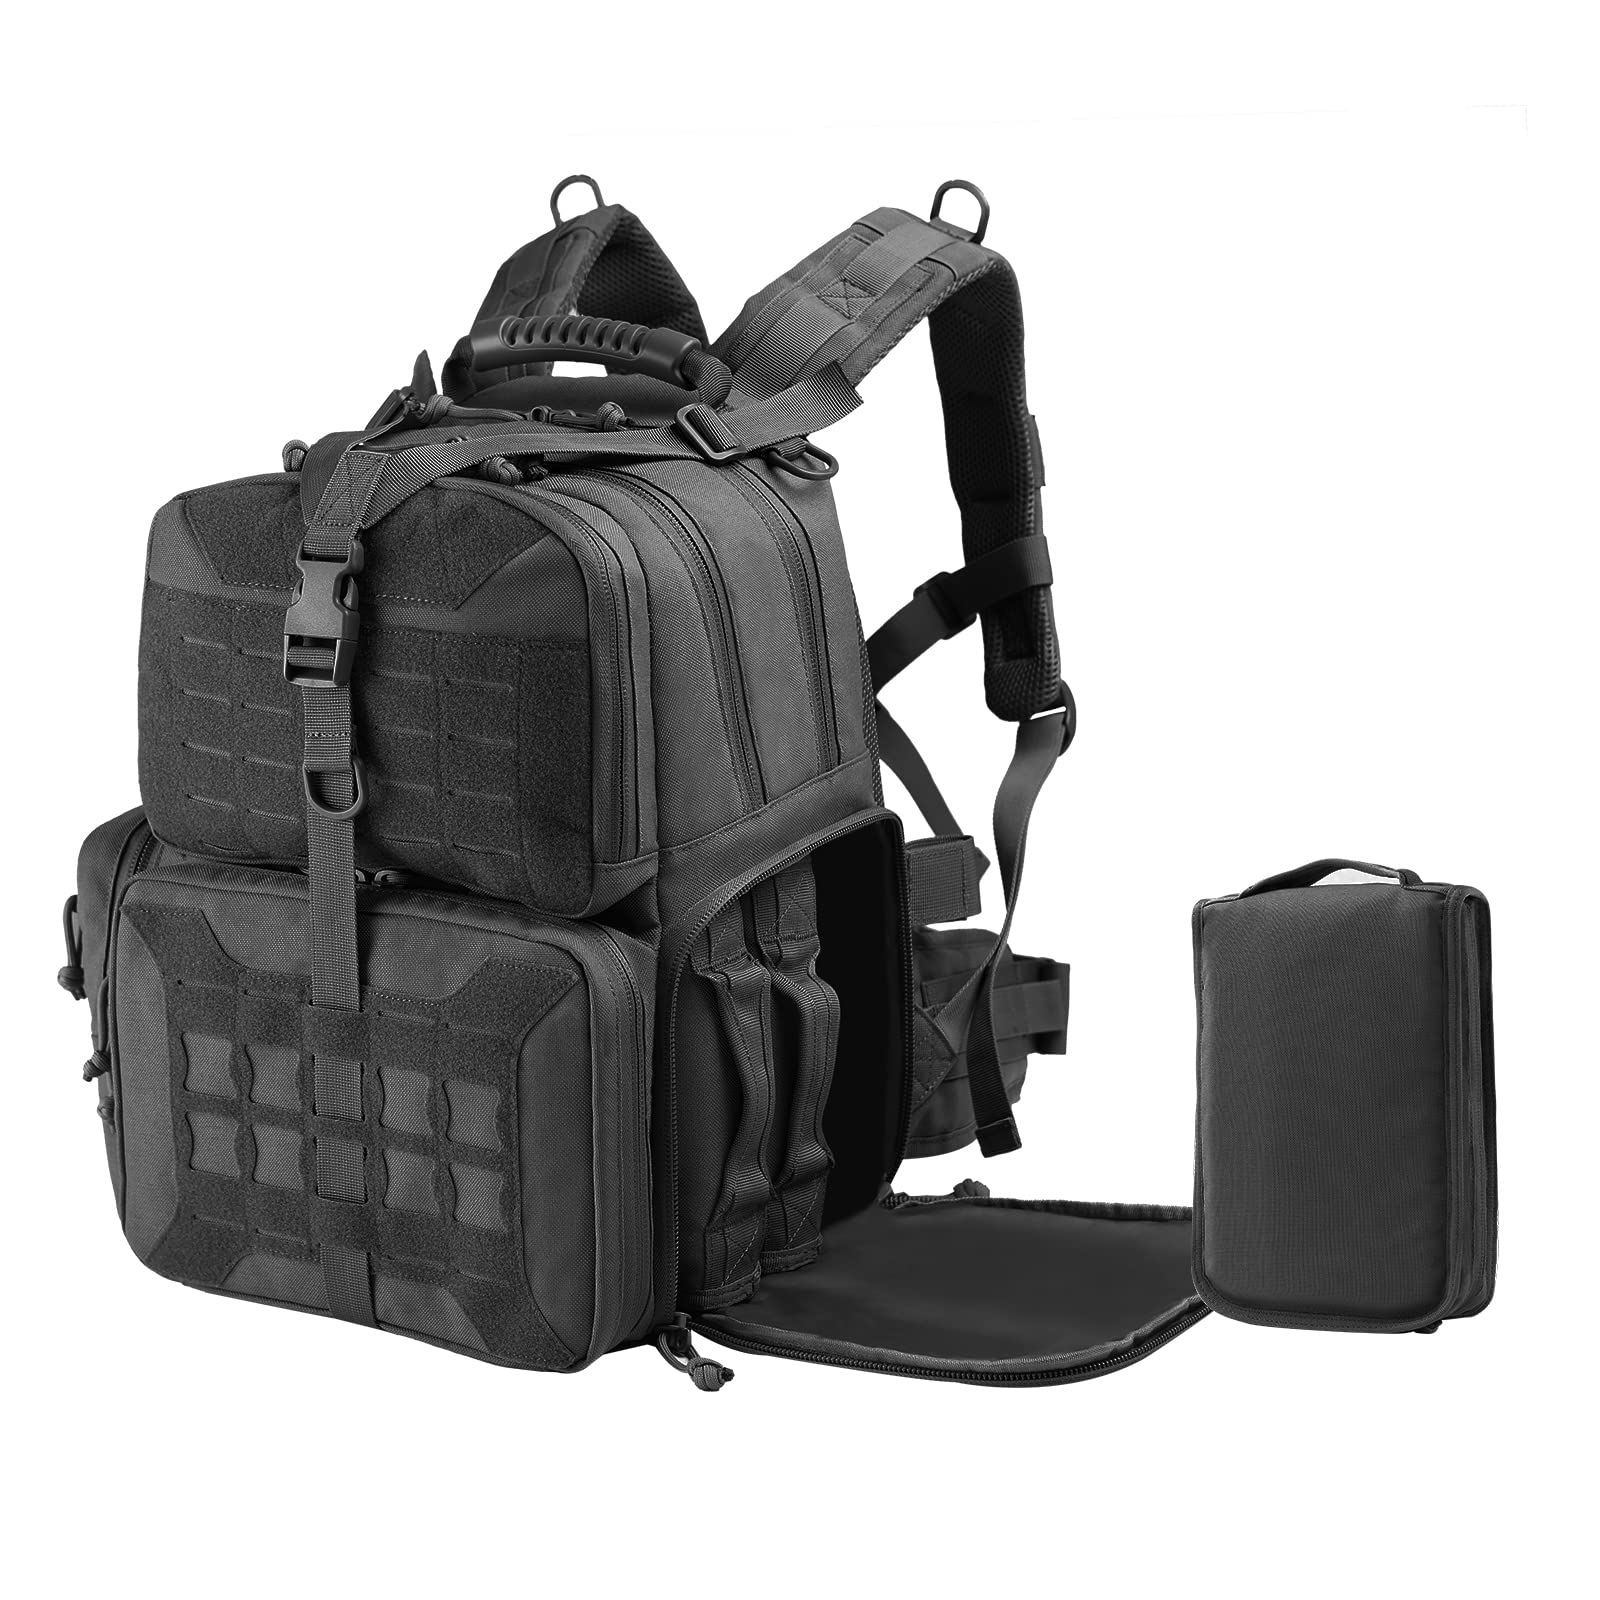 送料無料VOTAGOO Tactical Range Backpack Gun Bag for Handguns and Ammo 3 Pistol Carrying Cases for Hunting Shooting並